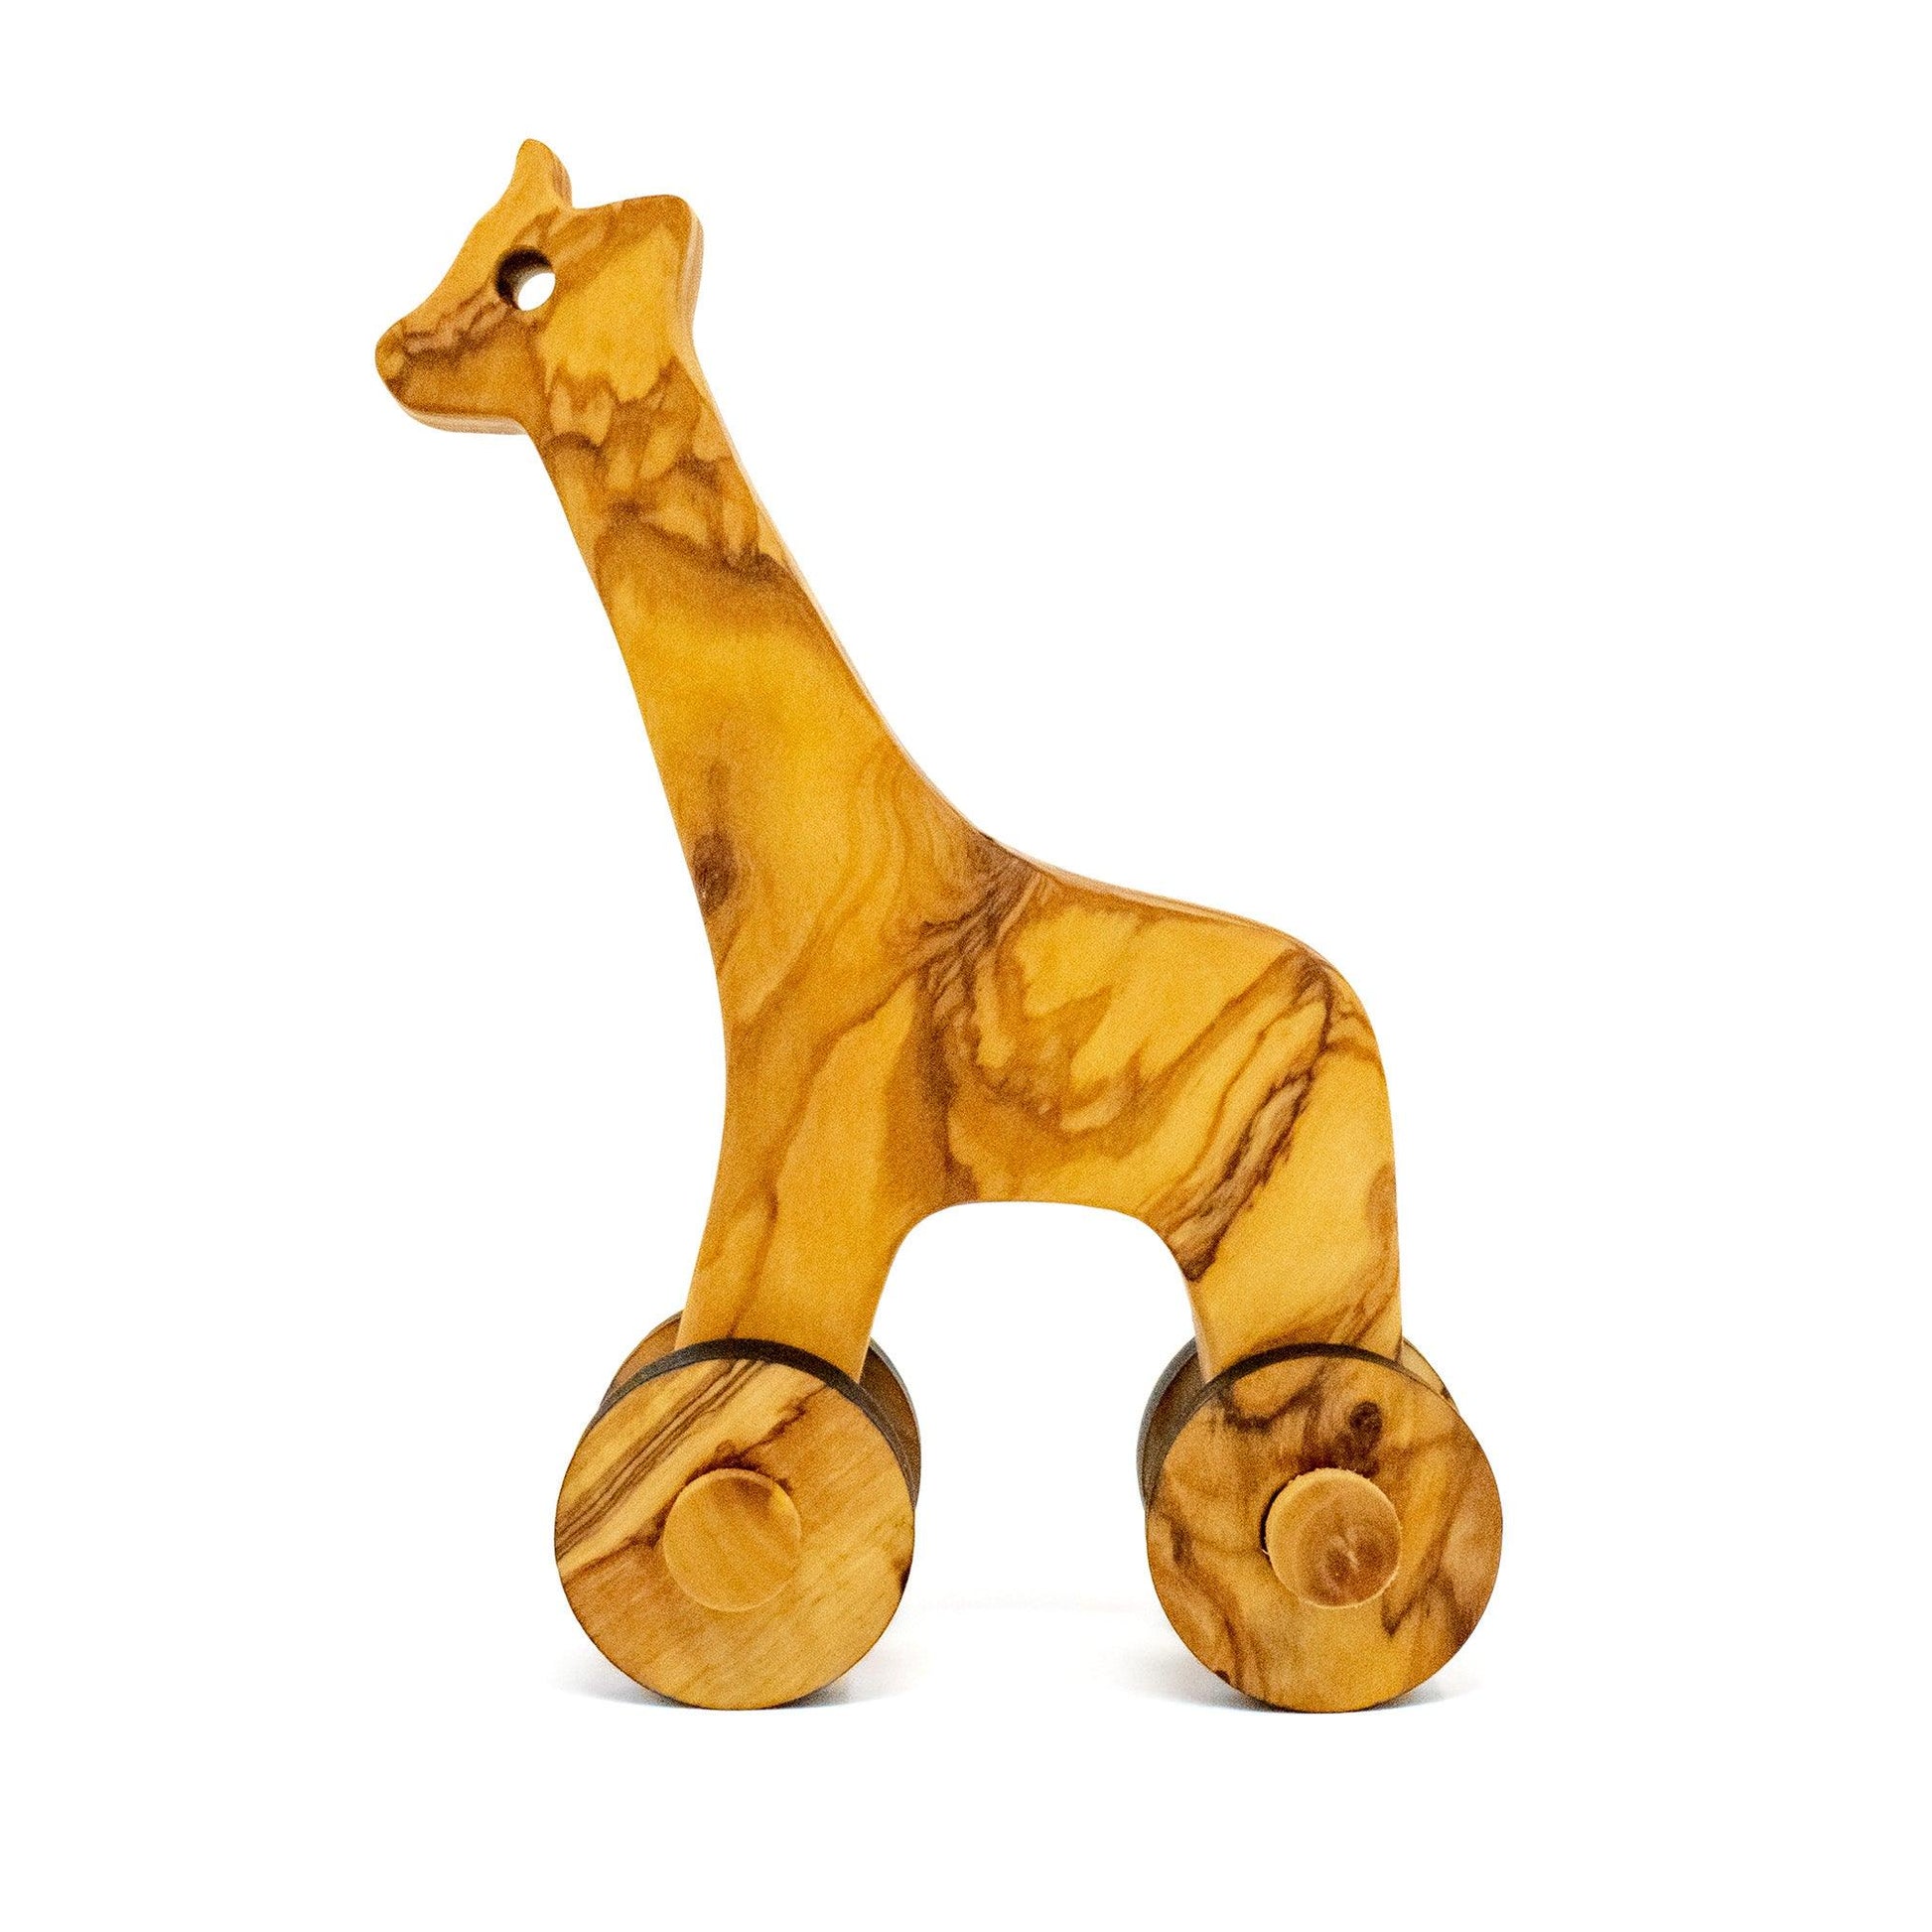 Handmade wooden figure toy, giraffe